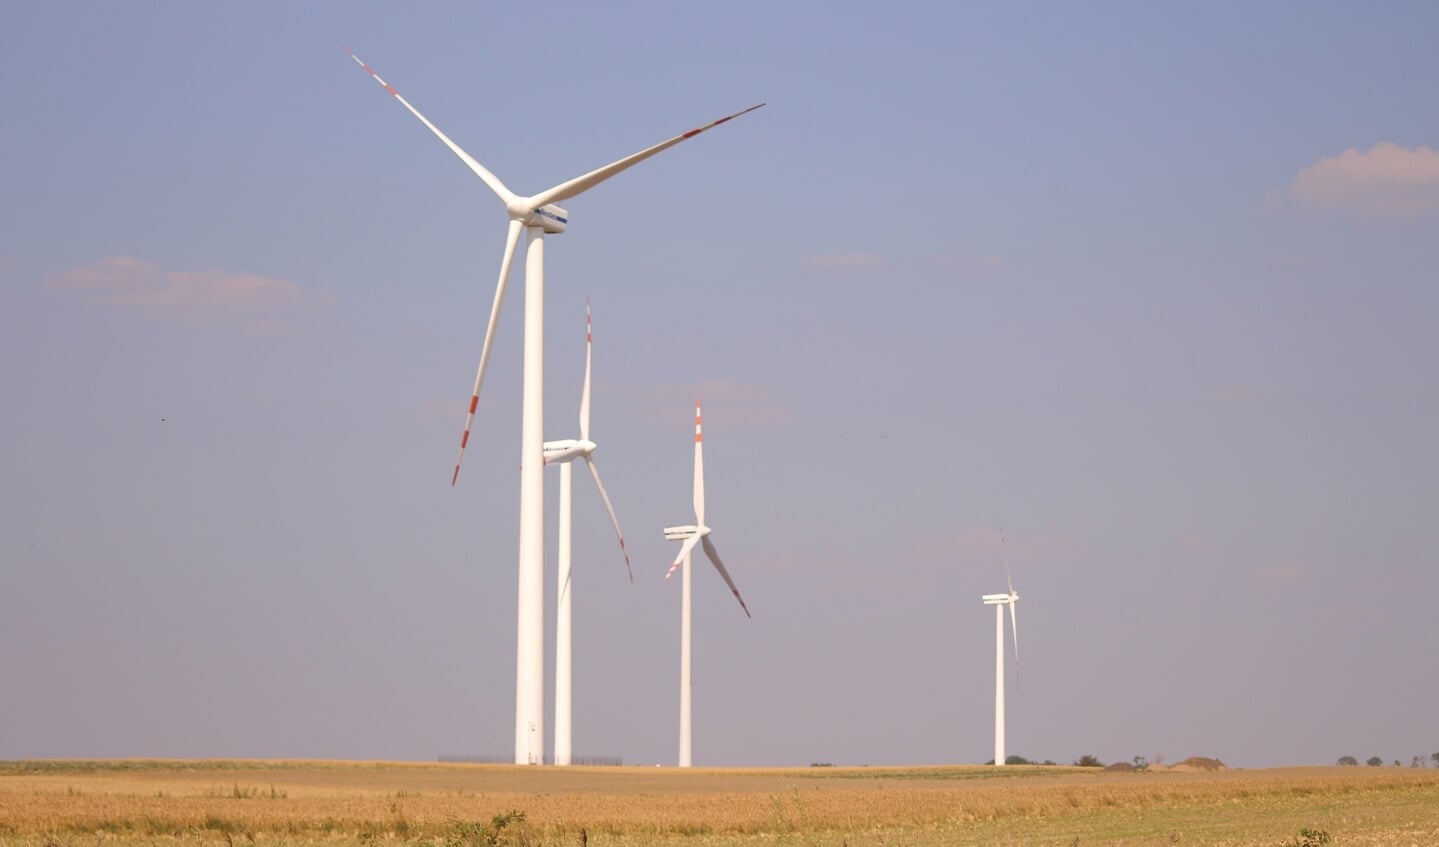 Nieuwenhuijse: ,,Het wordt tijd dat de politiek de zorgen van inwoners over windmolens serieus neemt.''